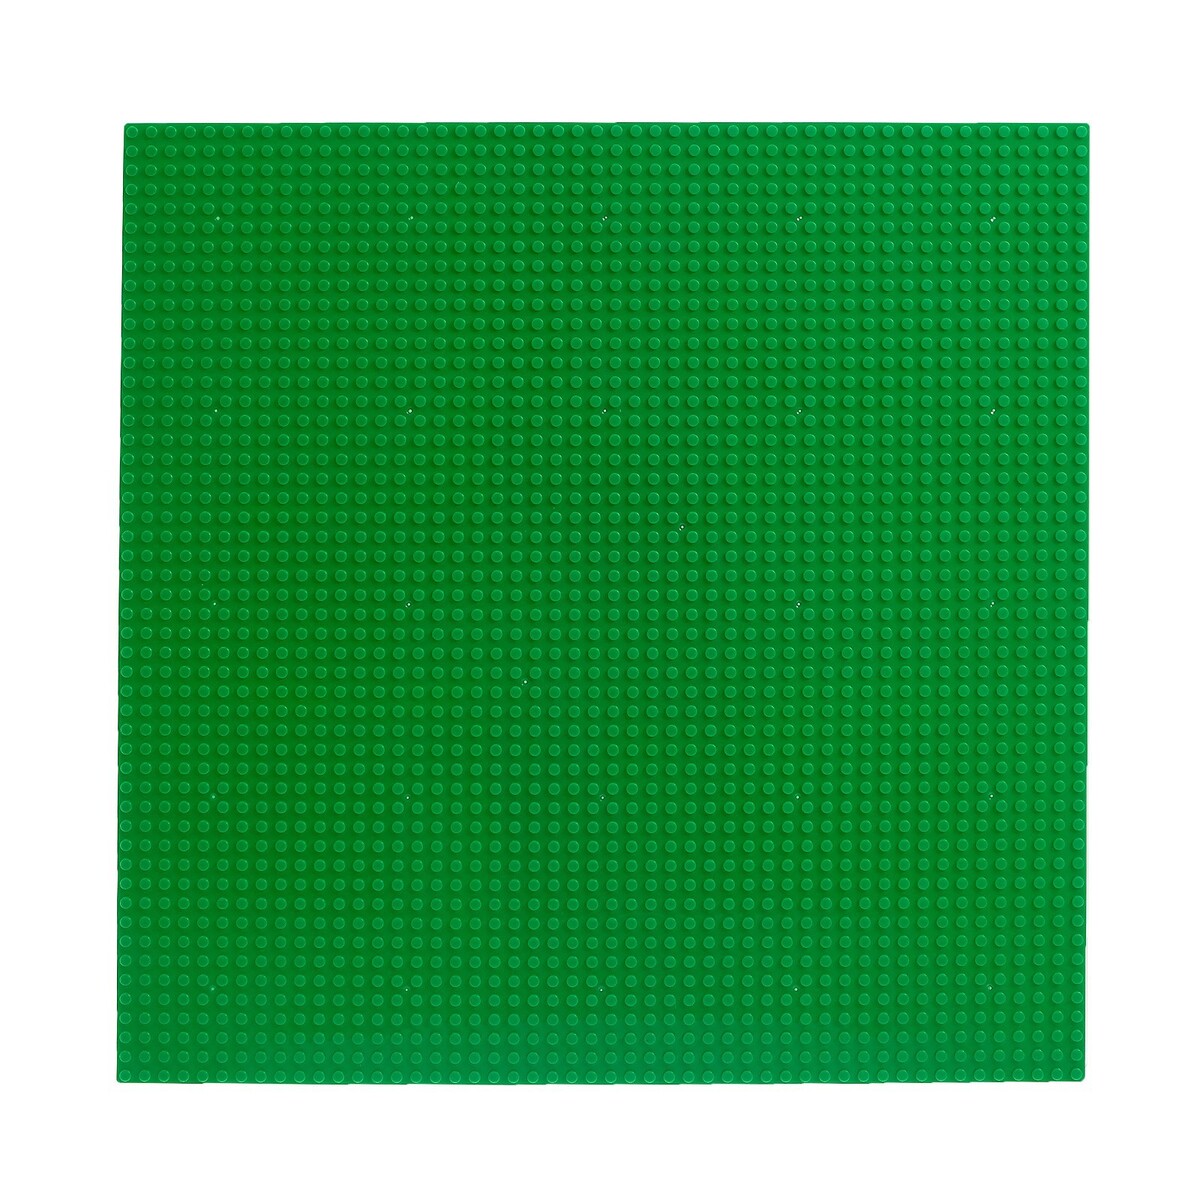 фото Пластина-основание для конструктора, 40 х 40 см, цвет зеленый no brand